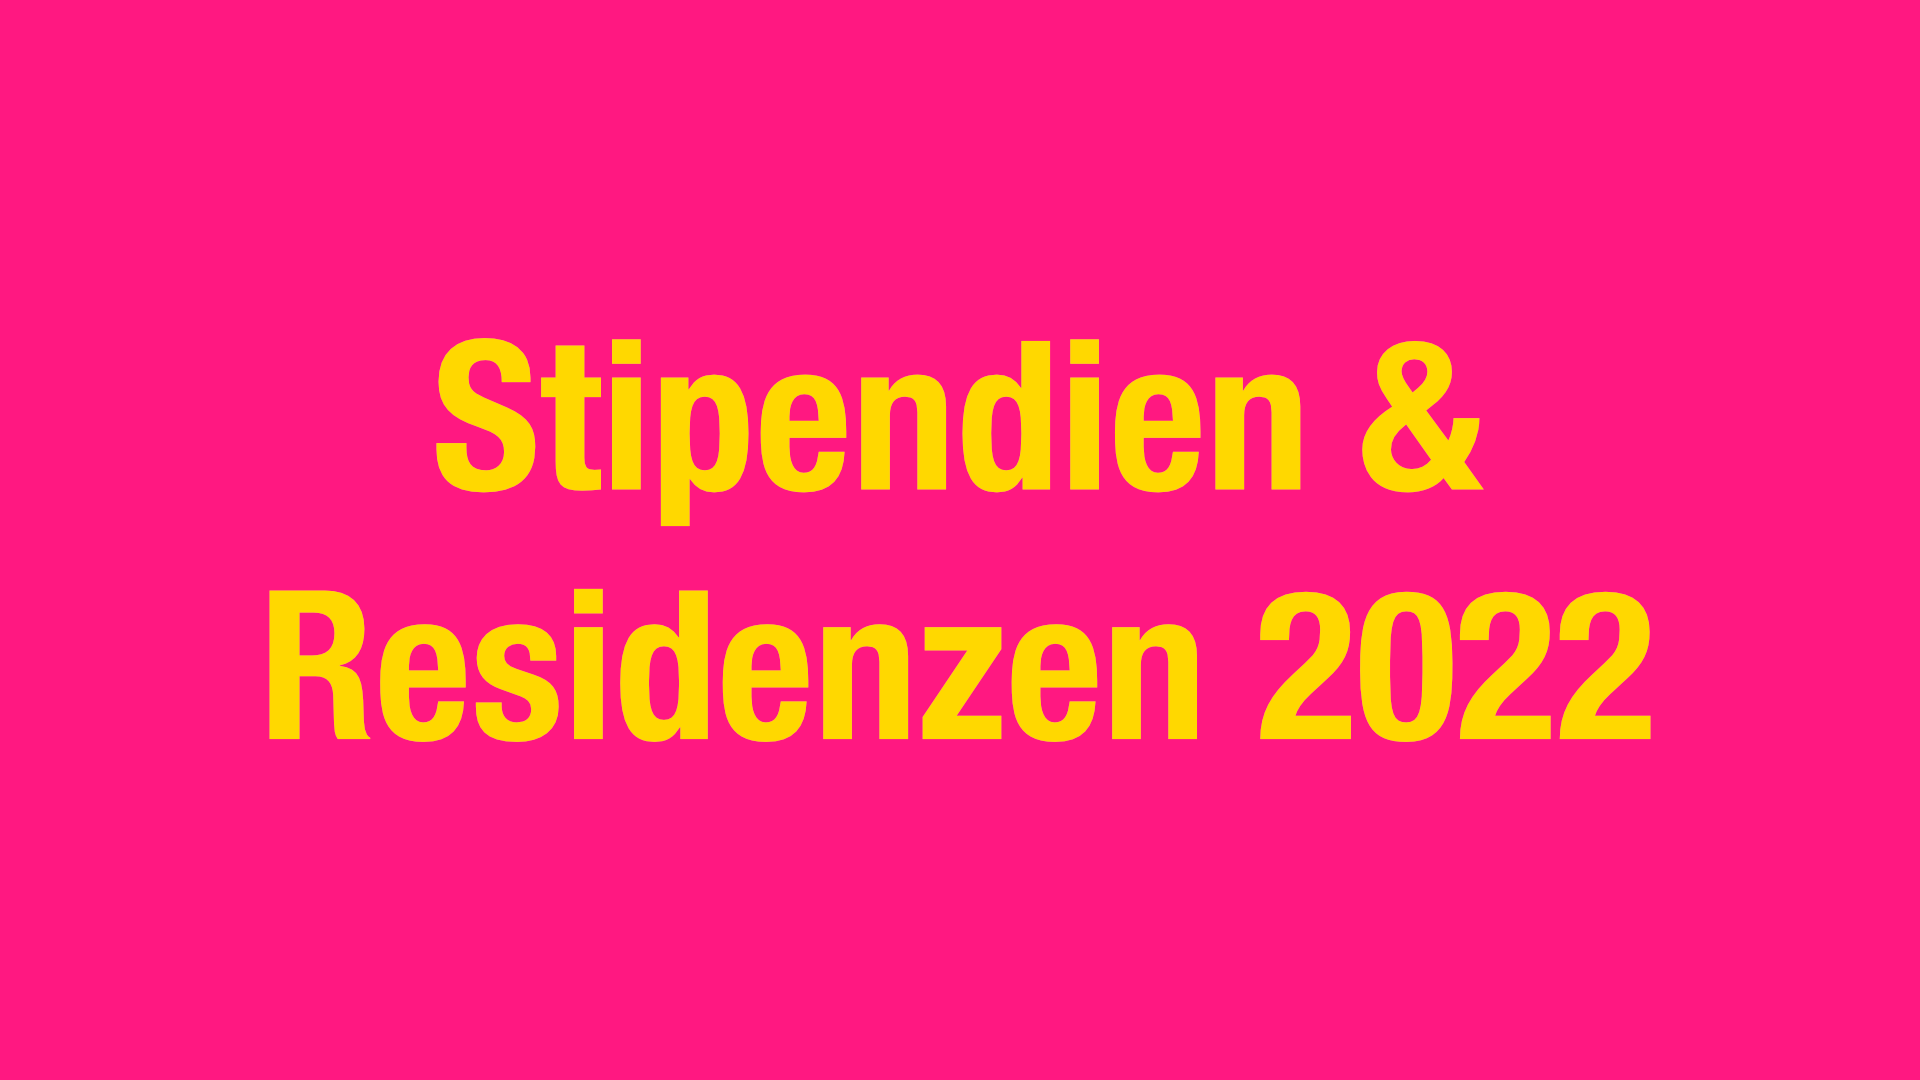 Stipendien & Residenzen 2022